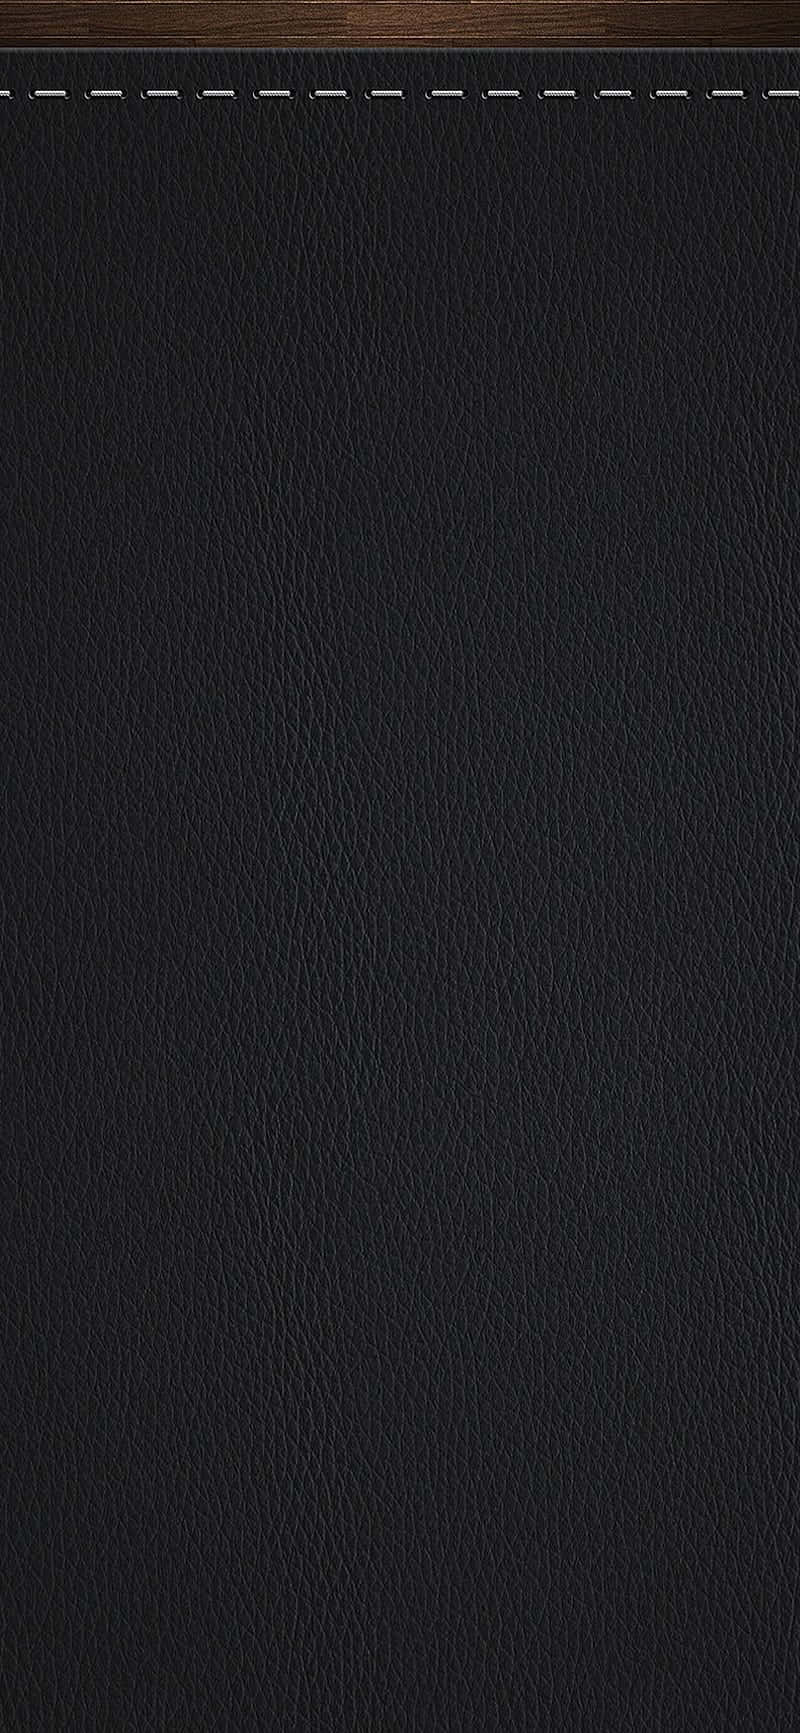 Glanset sort læderstof, der skinner, når det fanger lyset. Wallpaper